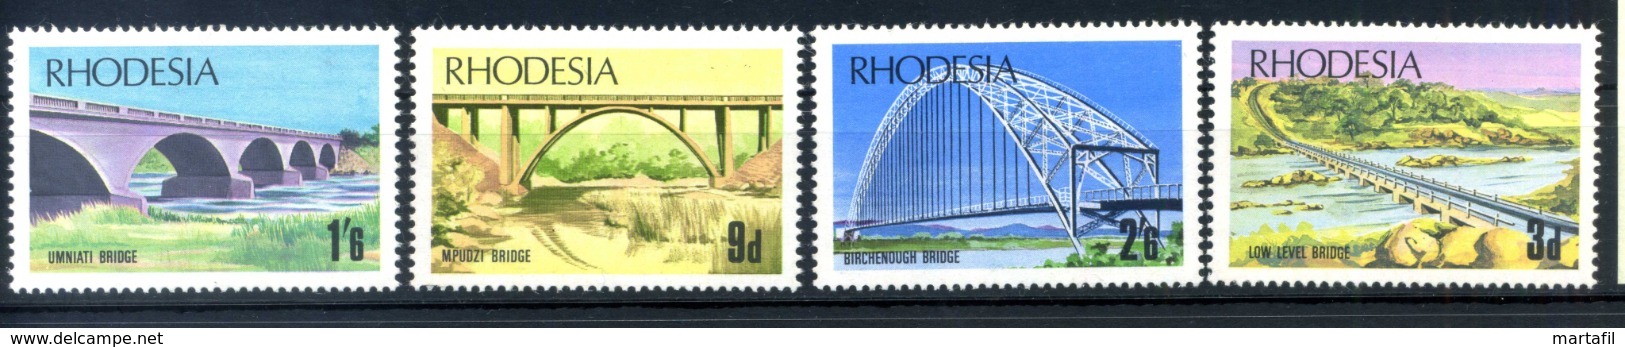 1969 RHODESIA SET MNH ** - Rodesia (1964-1980)